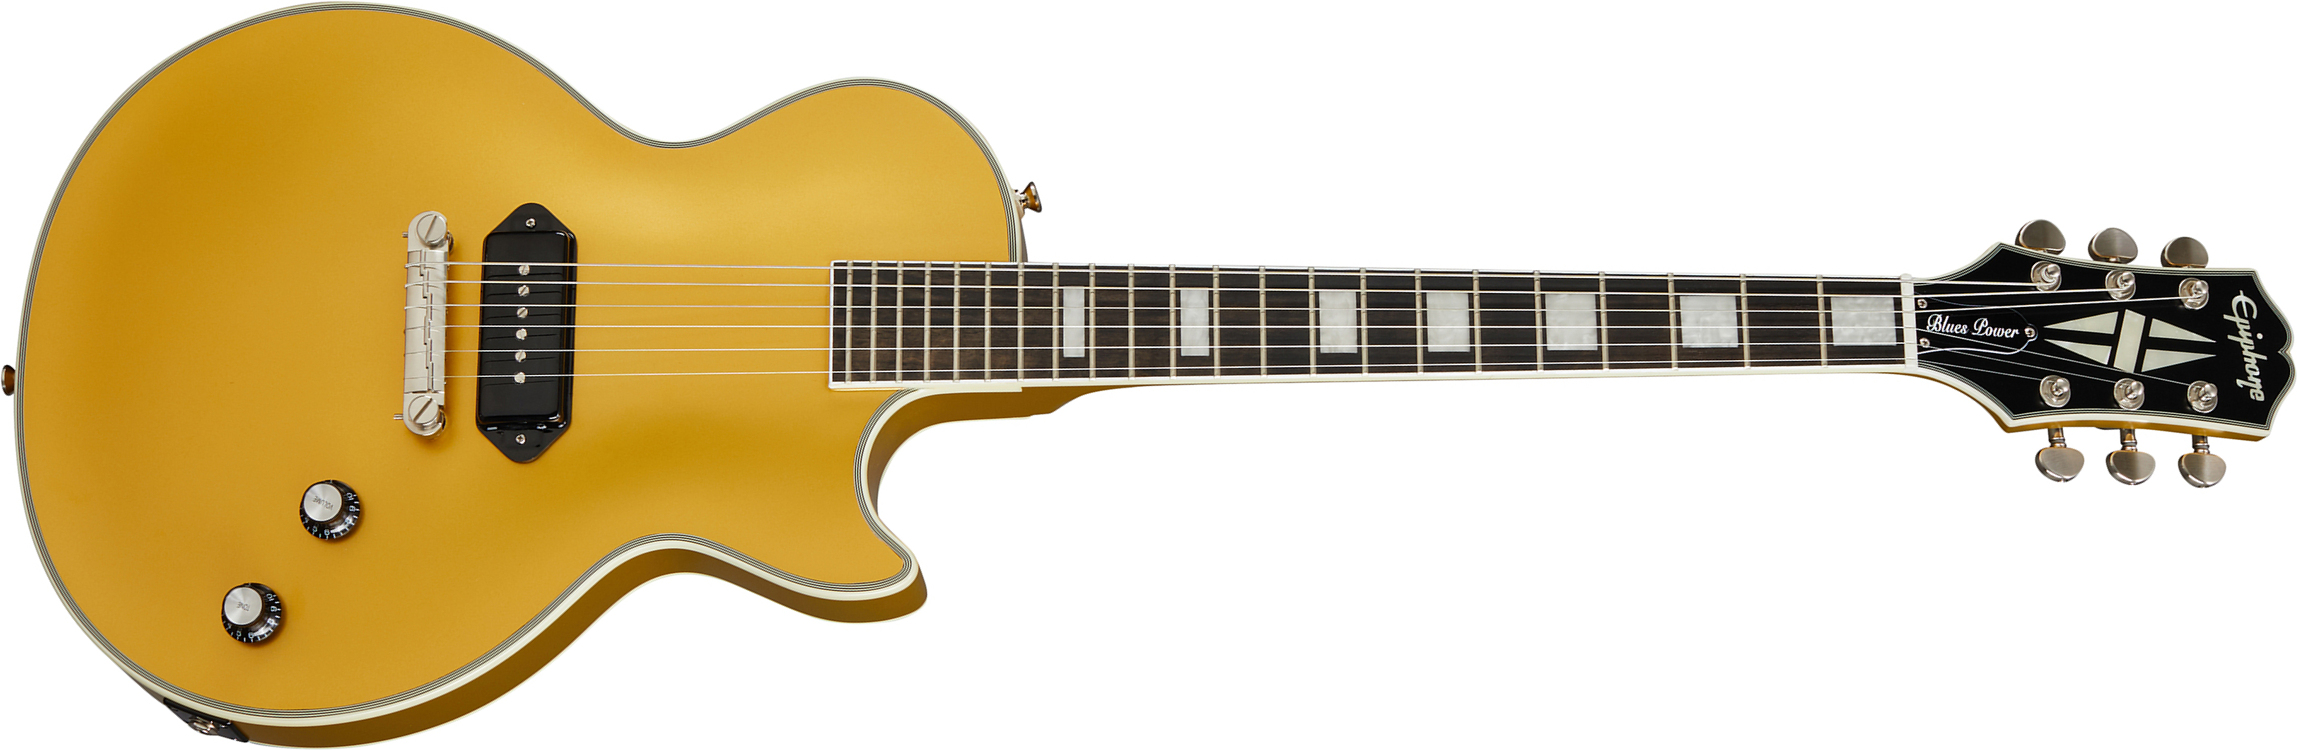 Epiphone Jared James Nichols Gold Glory Les Paul Custom Ltd Signature S P90 Ht Eb - Double Gold Vintage Aged - Guitarra eléctrica de corte único. - Ma